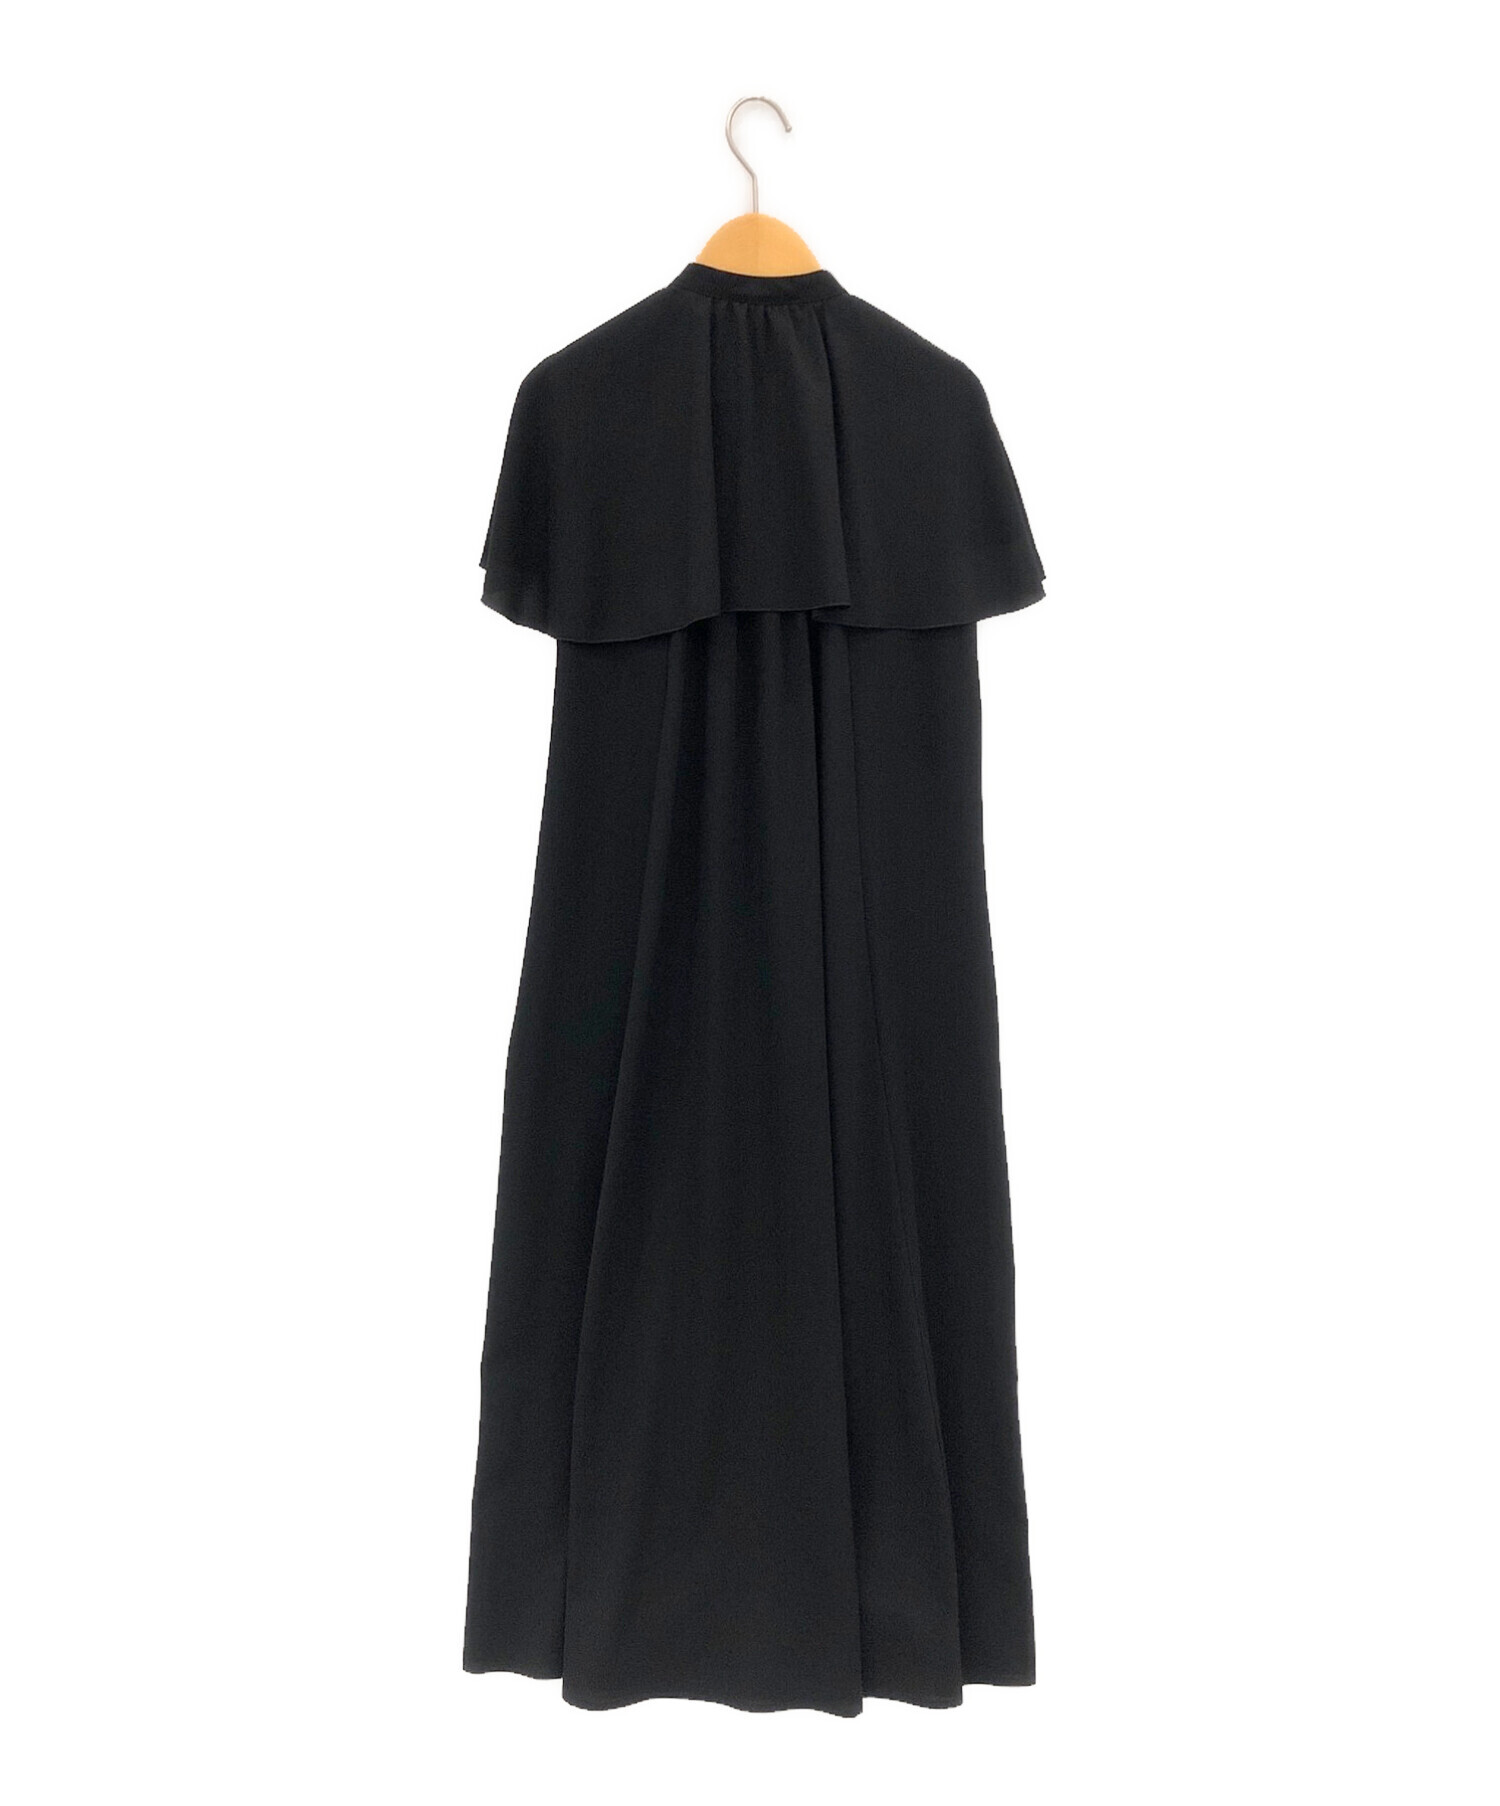 ENFOLD (エンフォルド) CAPE-SLEEVE DRESS ブラック サイズ:36